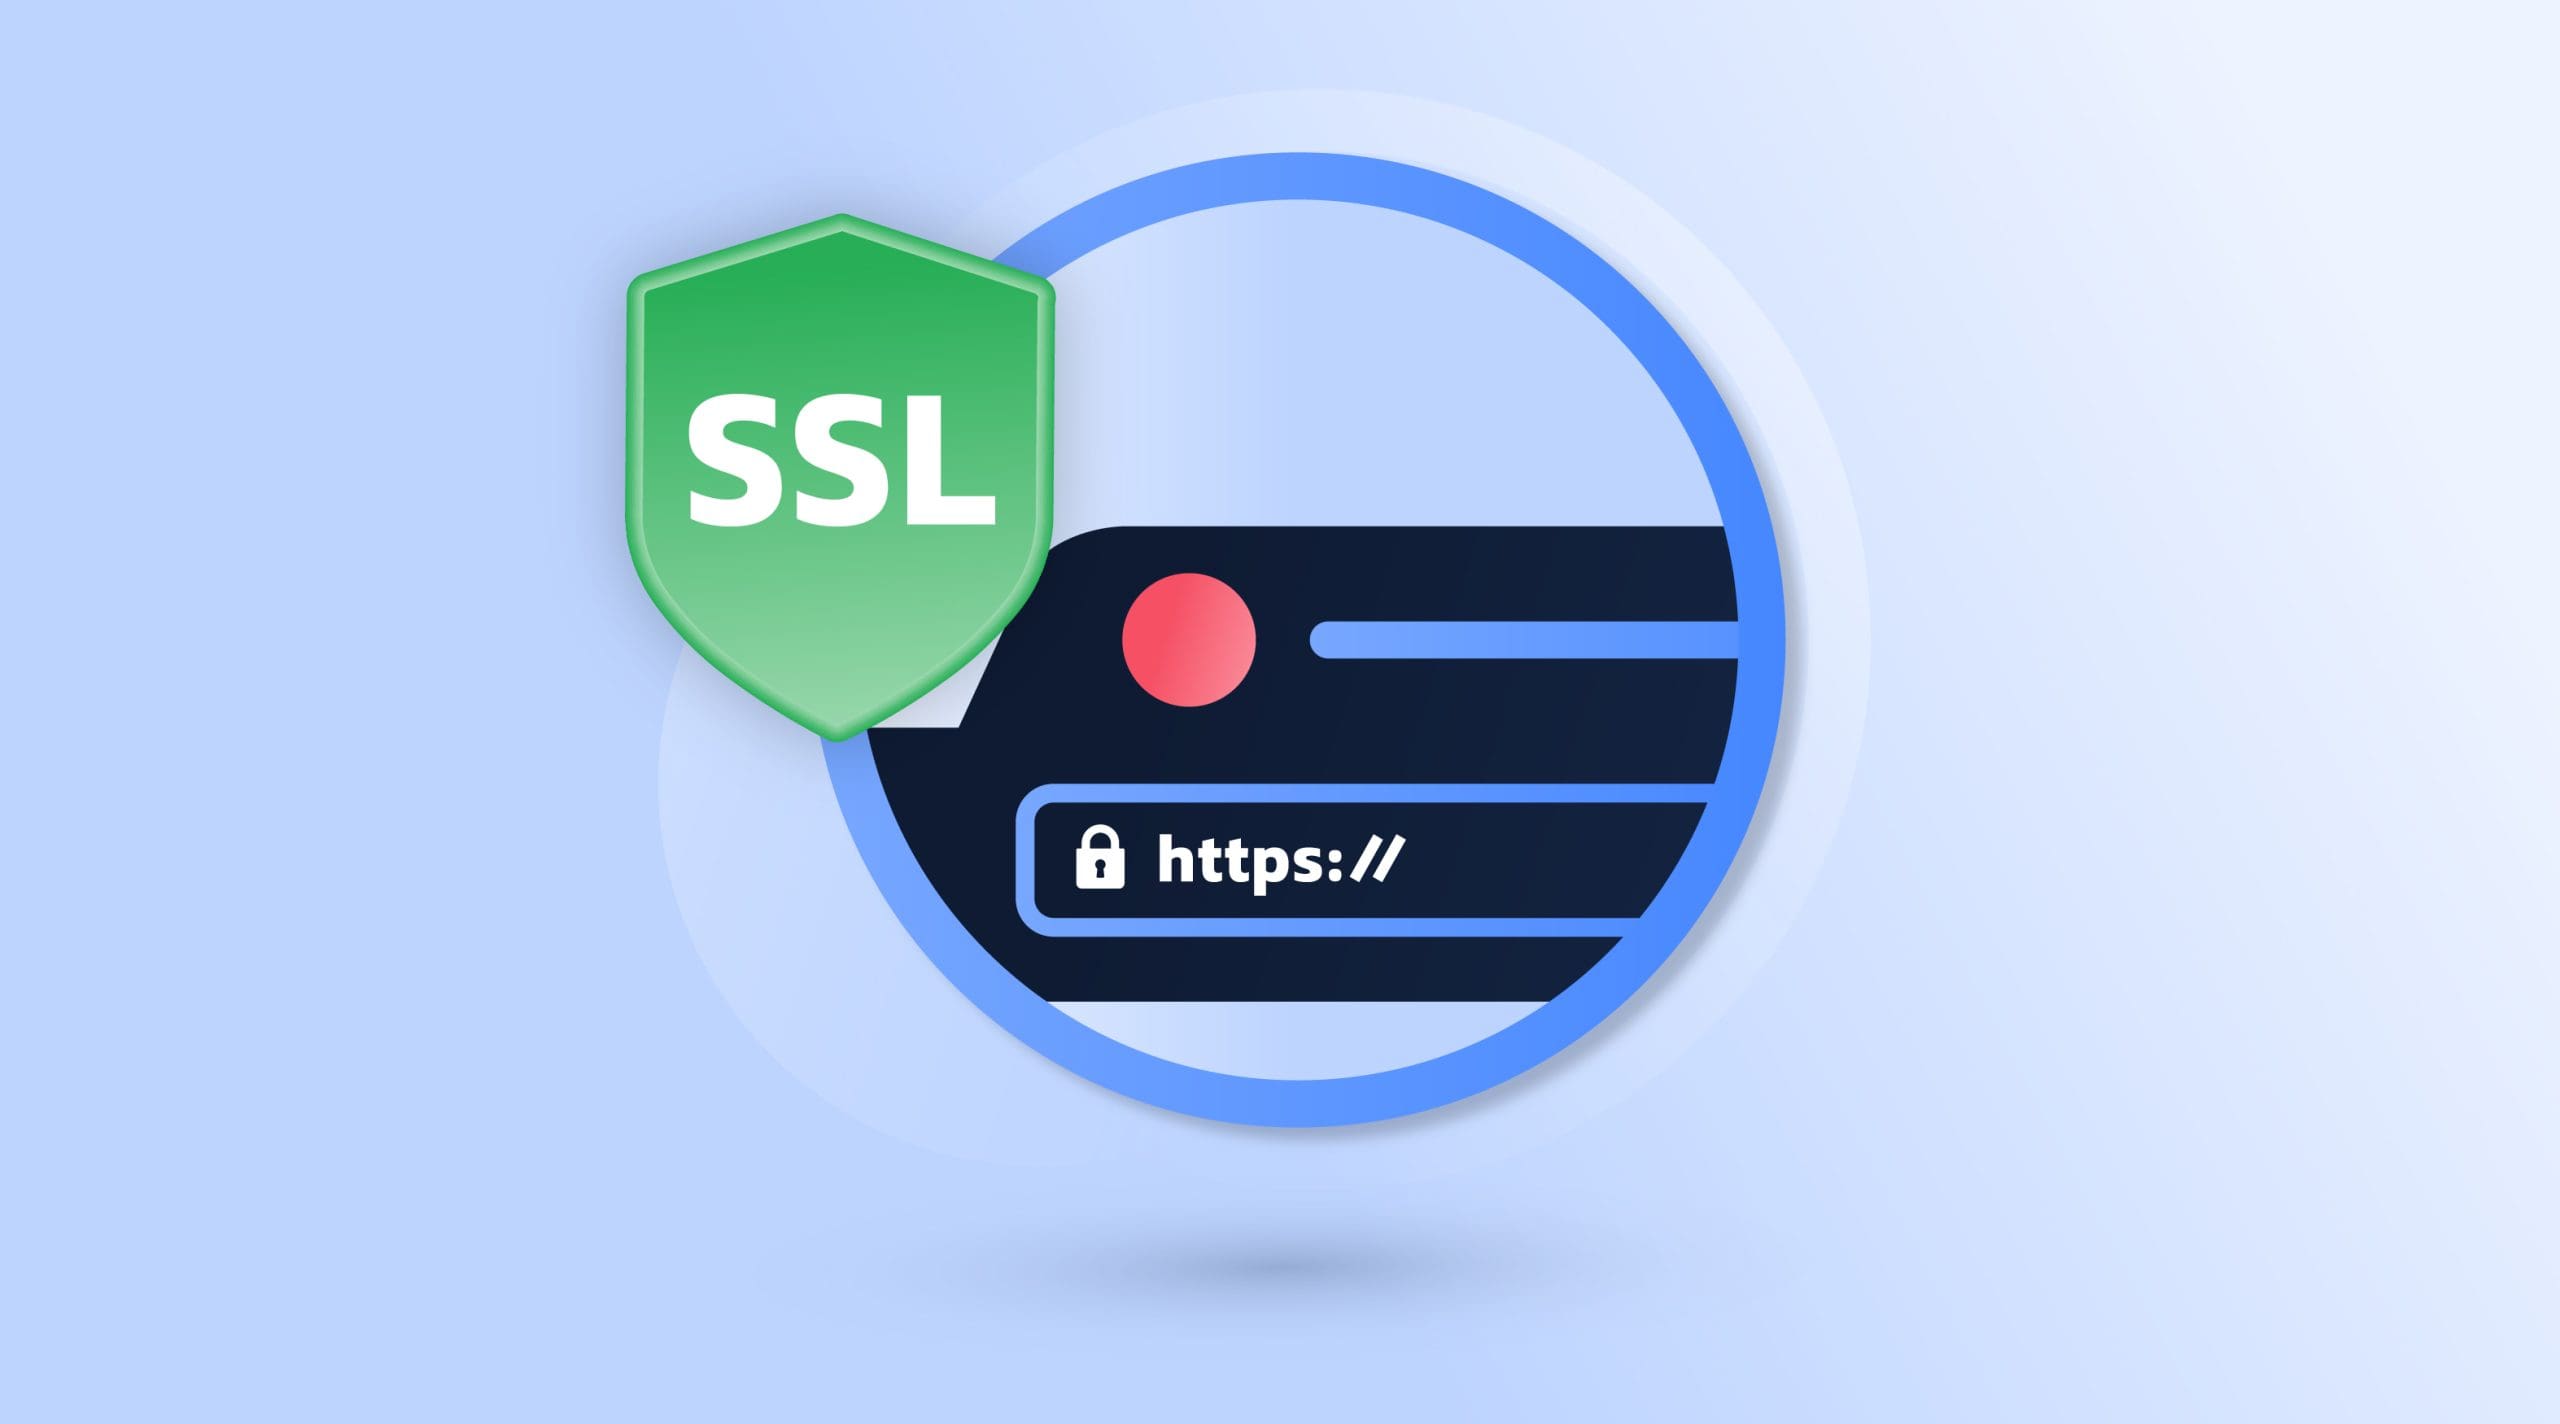 تغییر دامنه, http به https, بروزرسانی امنیتی, صفحات امن, SSL/TLS, ترافیک رمزگذاری شده, اعتماد کاربران, جلوگیری از حملات مخرب, جلب رتبه‌بندی مناسب در موتورهای جستجو, تجربه کاربری بهتر, حفاظت اطلاعات حساس